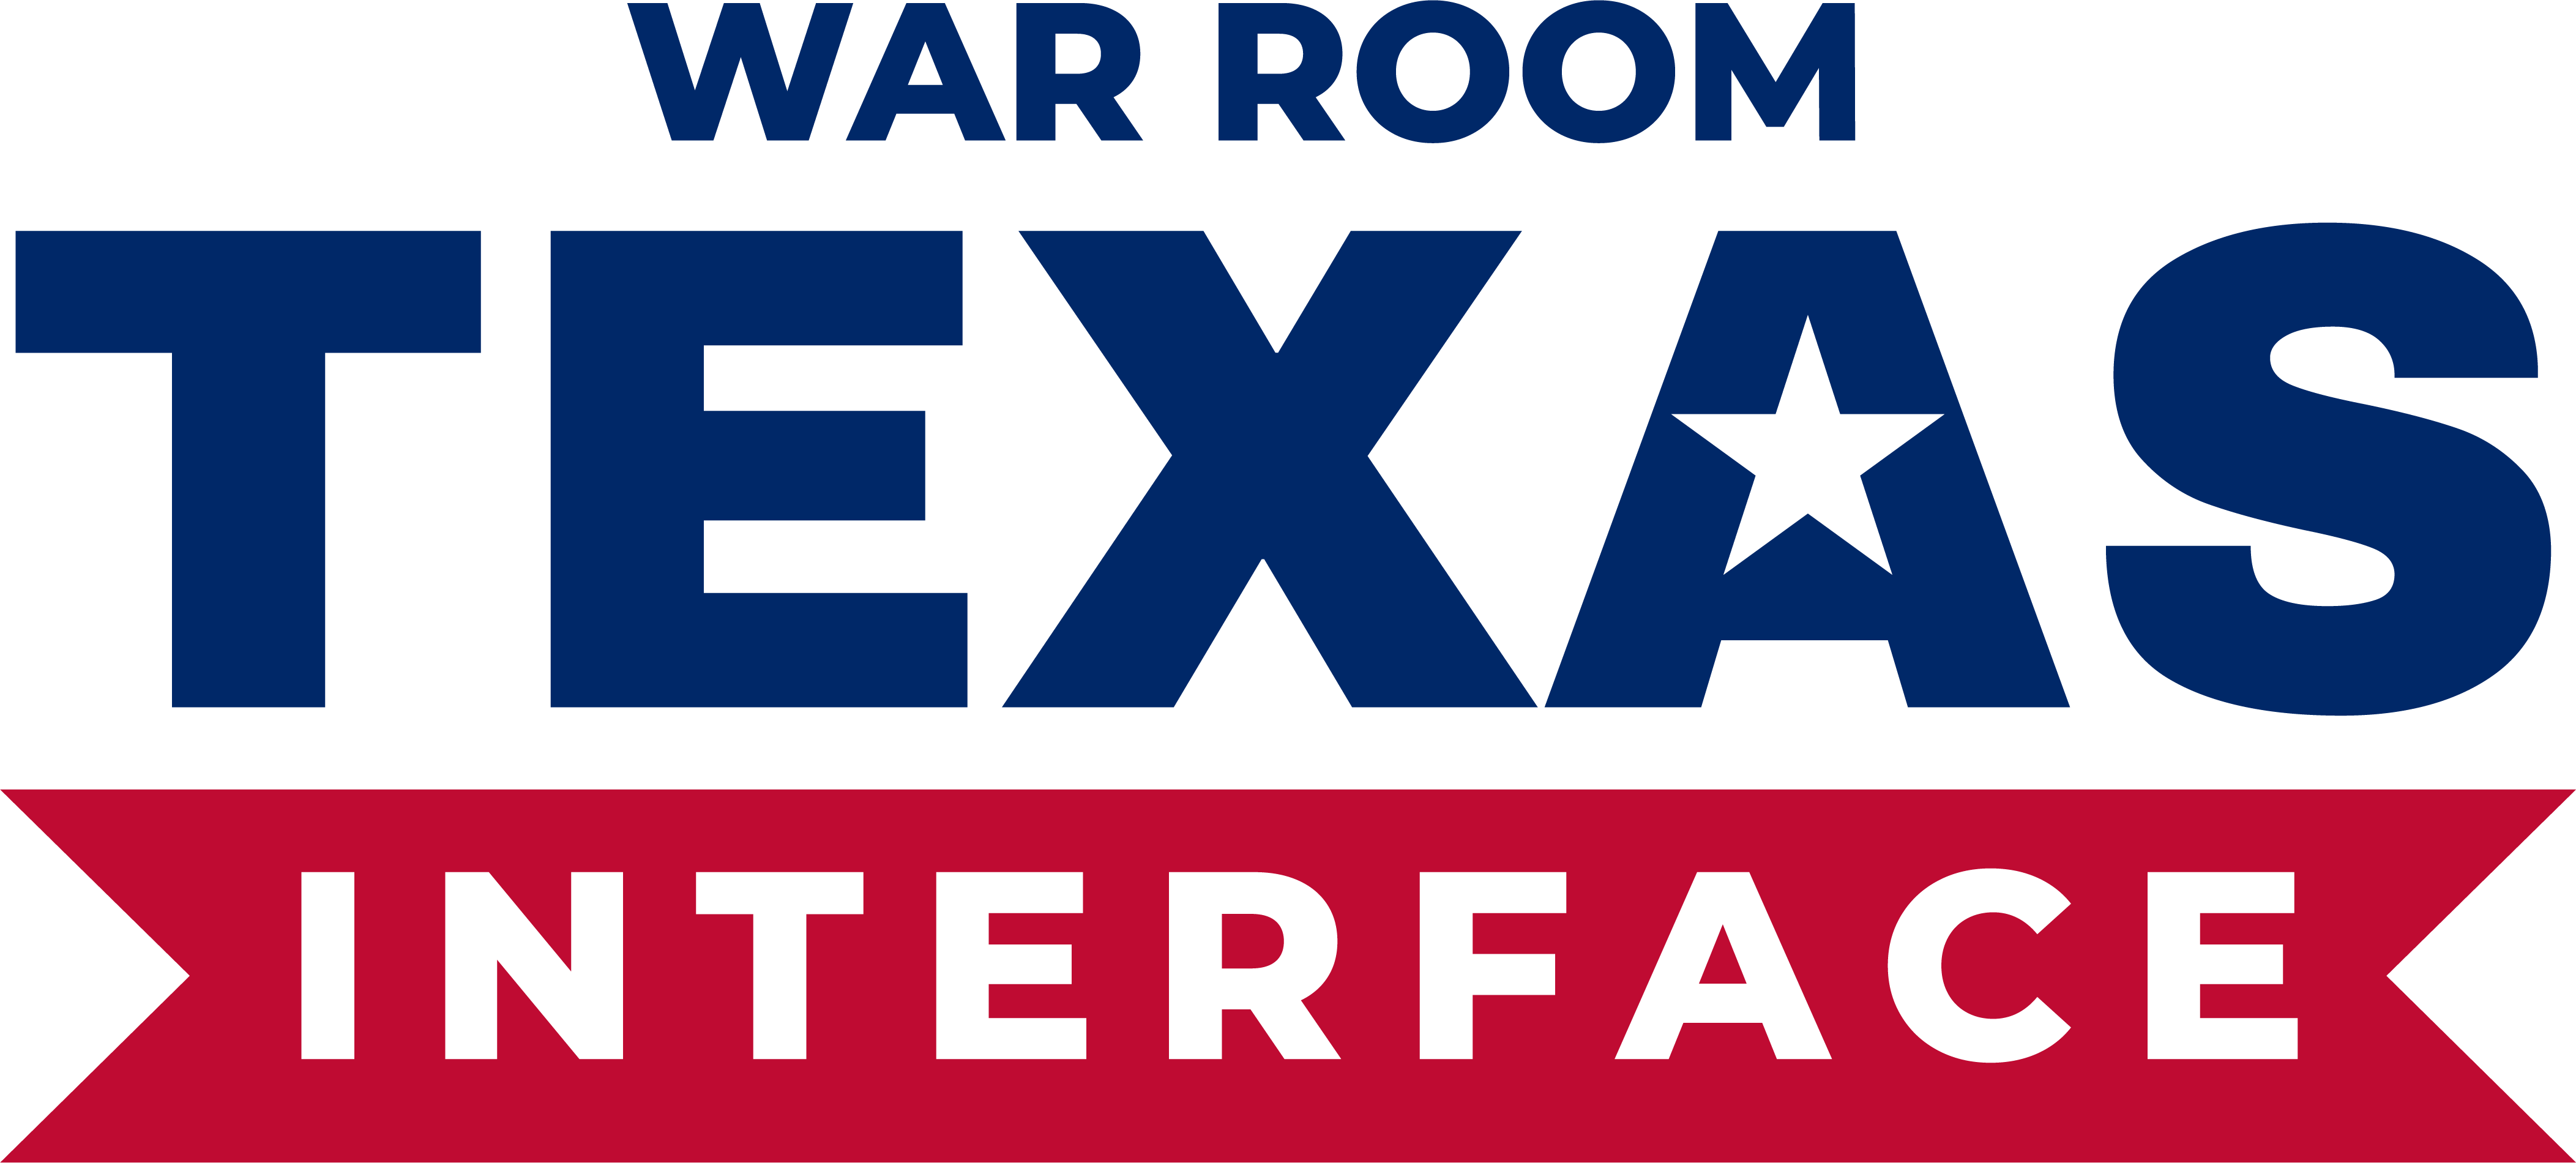 War Room Texas: Interface